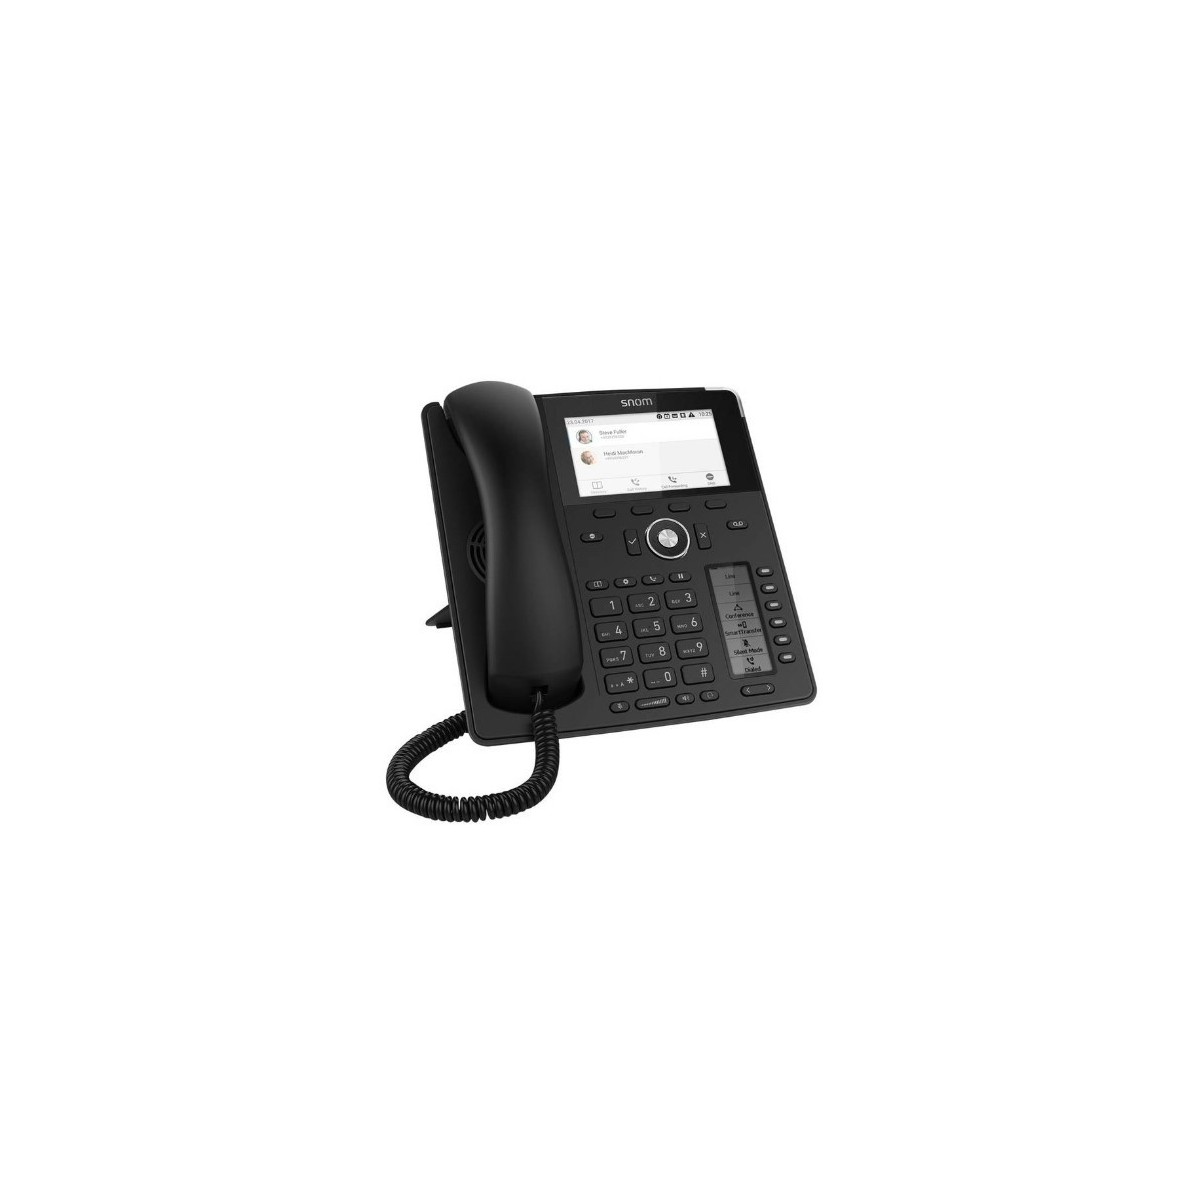 Snom D785N VOIP Telefon Prof. SIP Gigabit schwarz - VoIP-Telefon - Voice-Over-IP